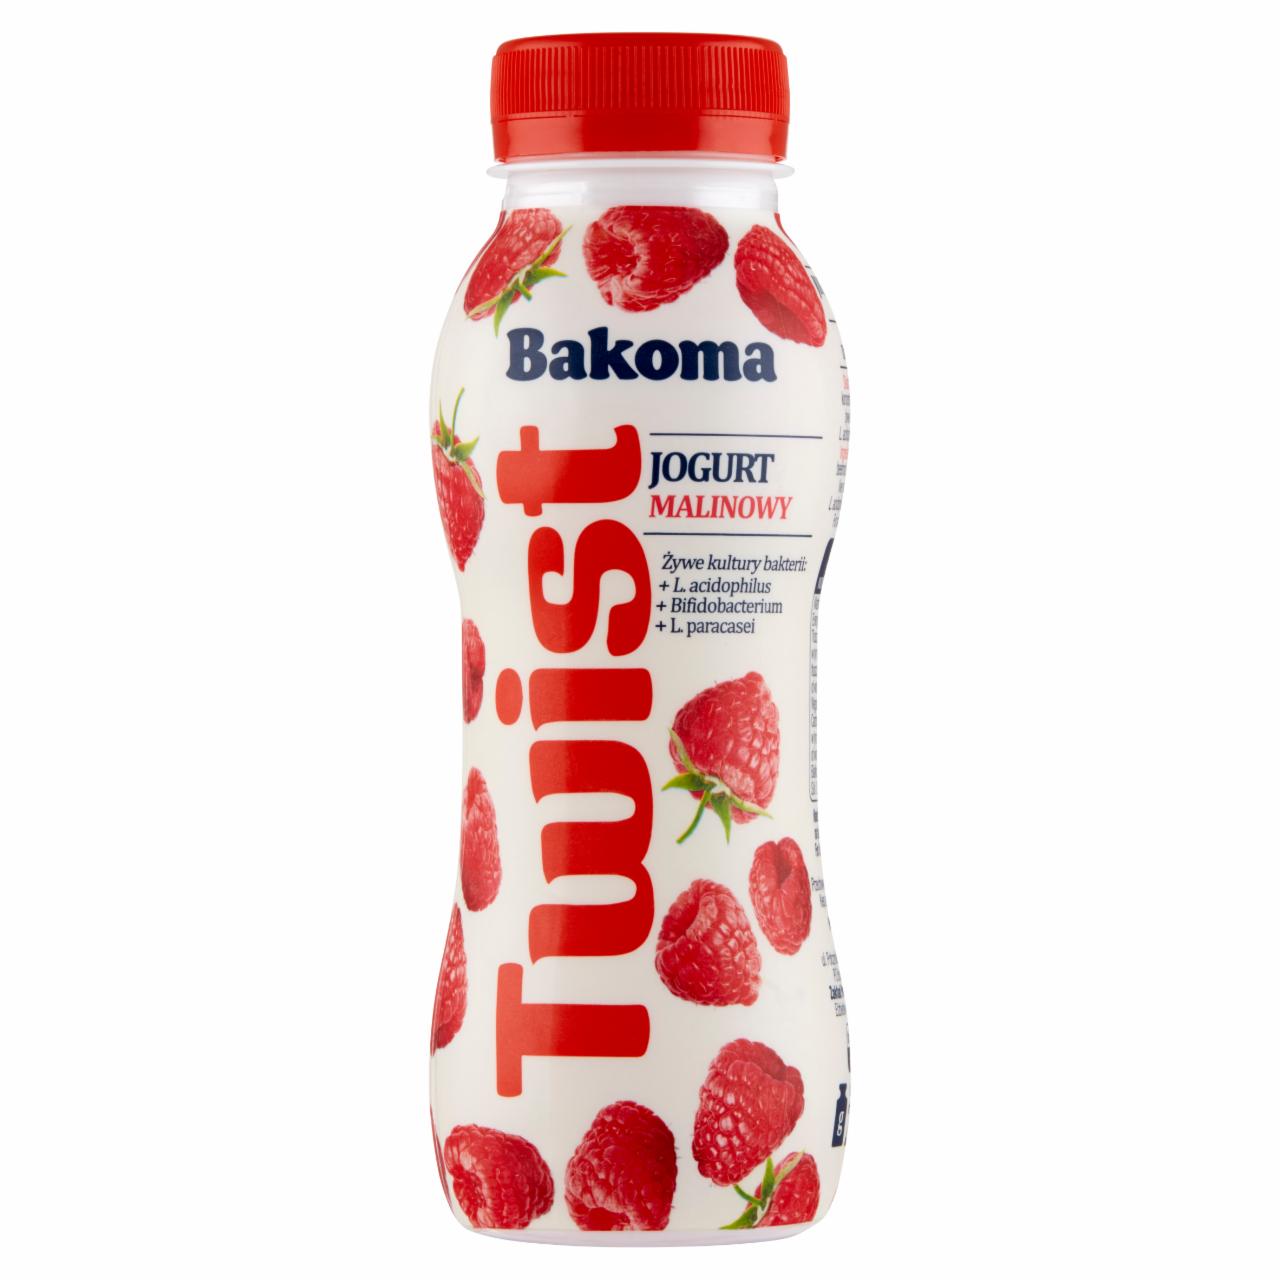 Zdjęcia - Bakoma Twist Jogurt malinowy 250 g